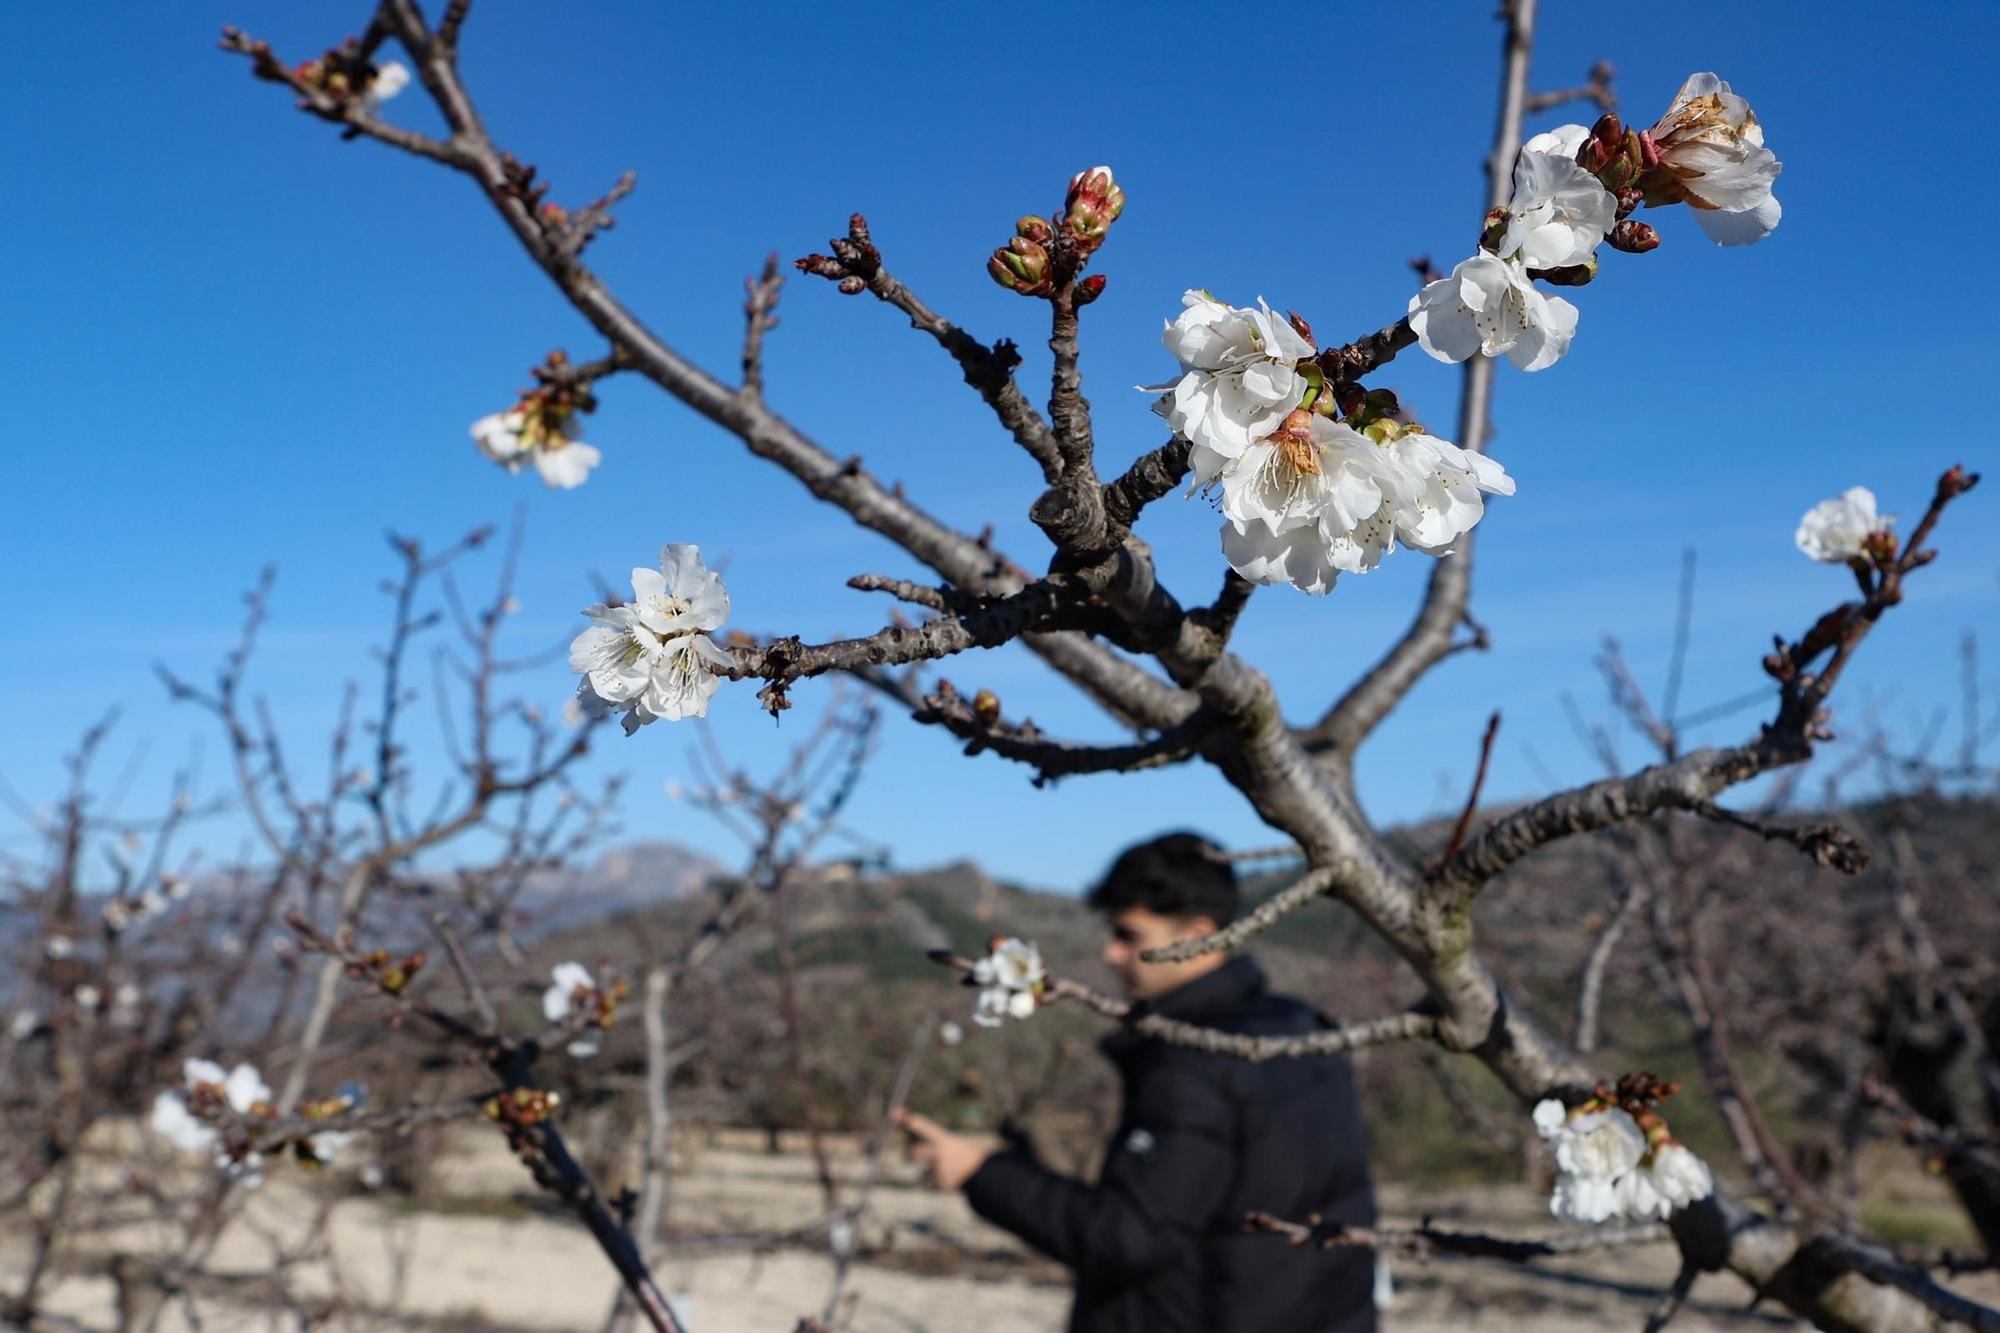 La sequía persistente en Alicante afecta a la floración de los cerezos y pone en peligro la cosecha por sexto año consecutivo